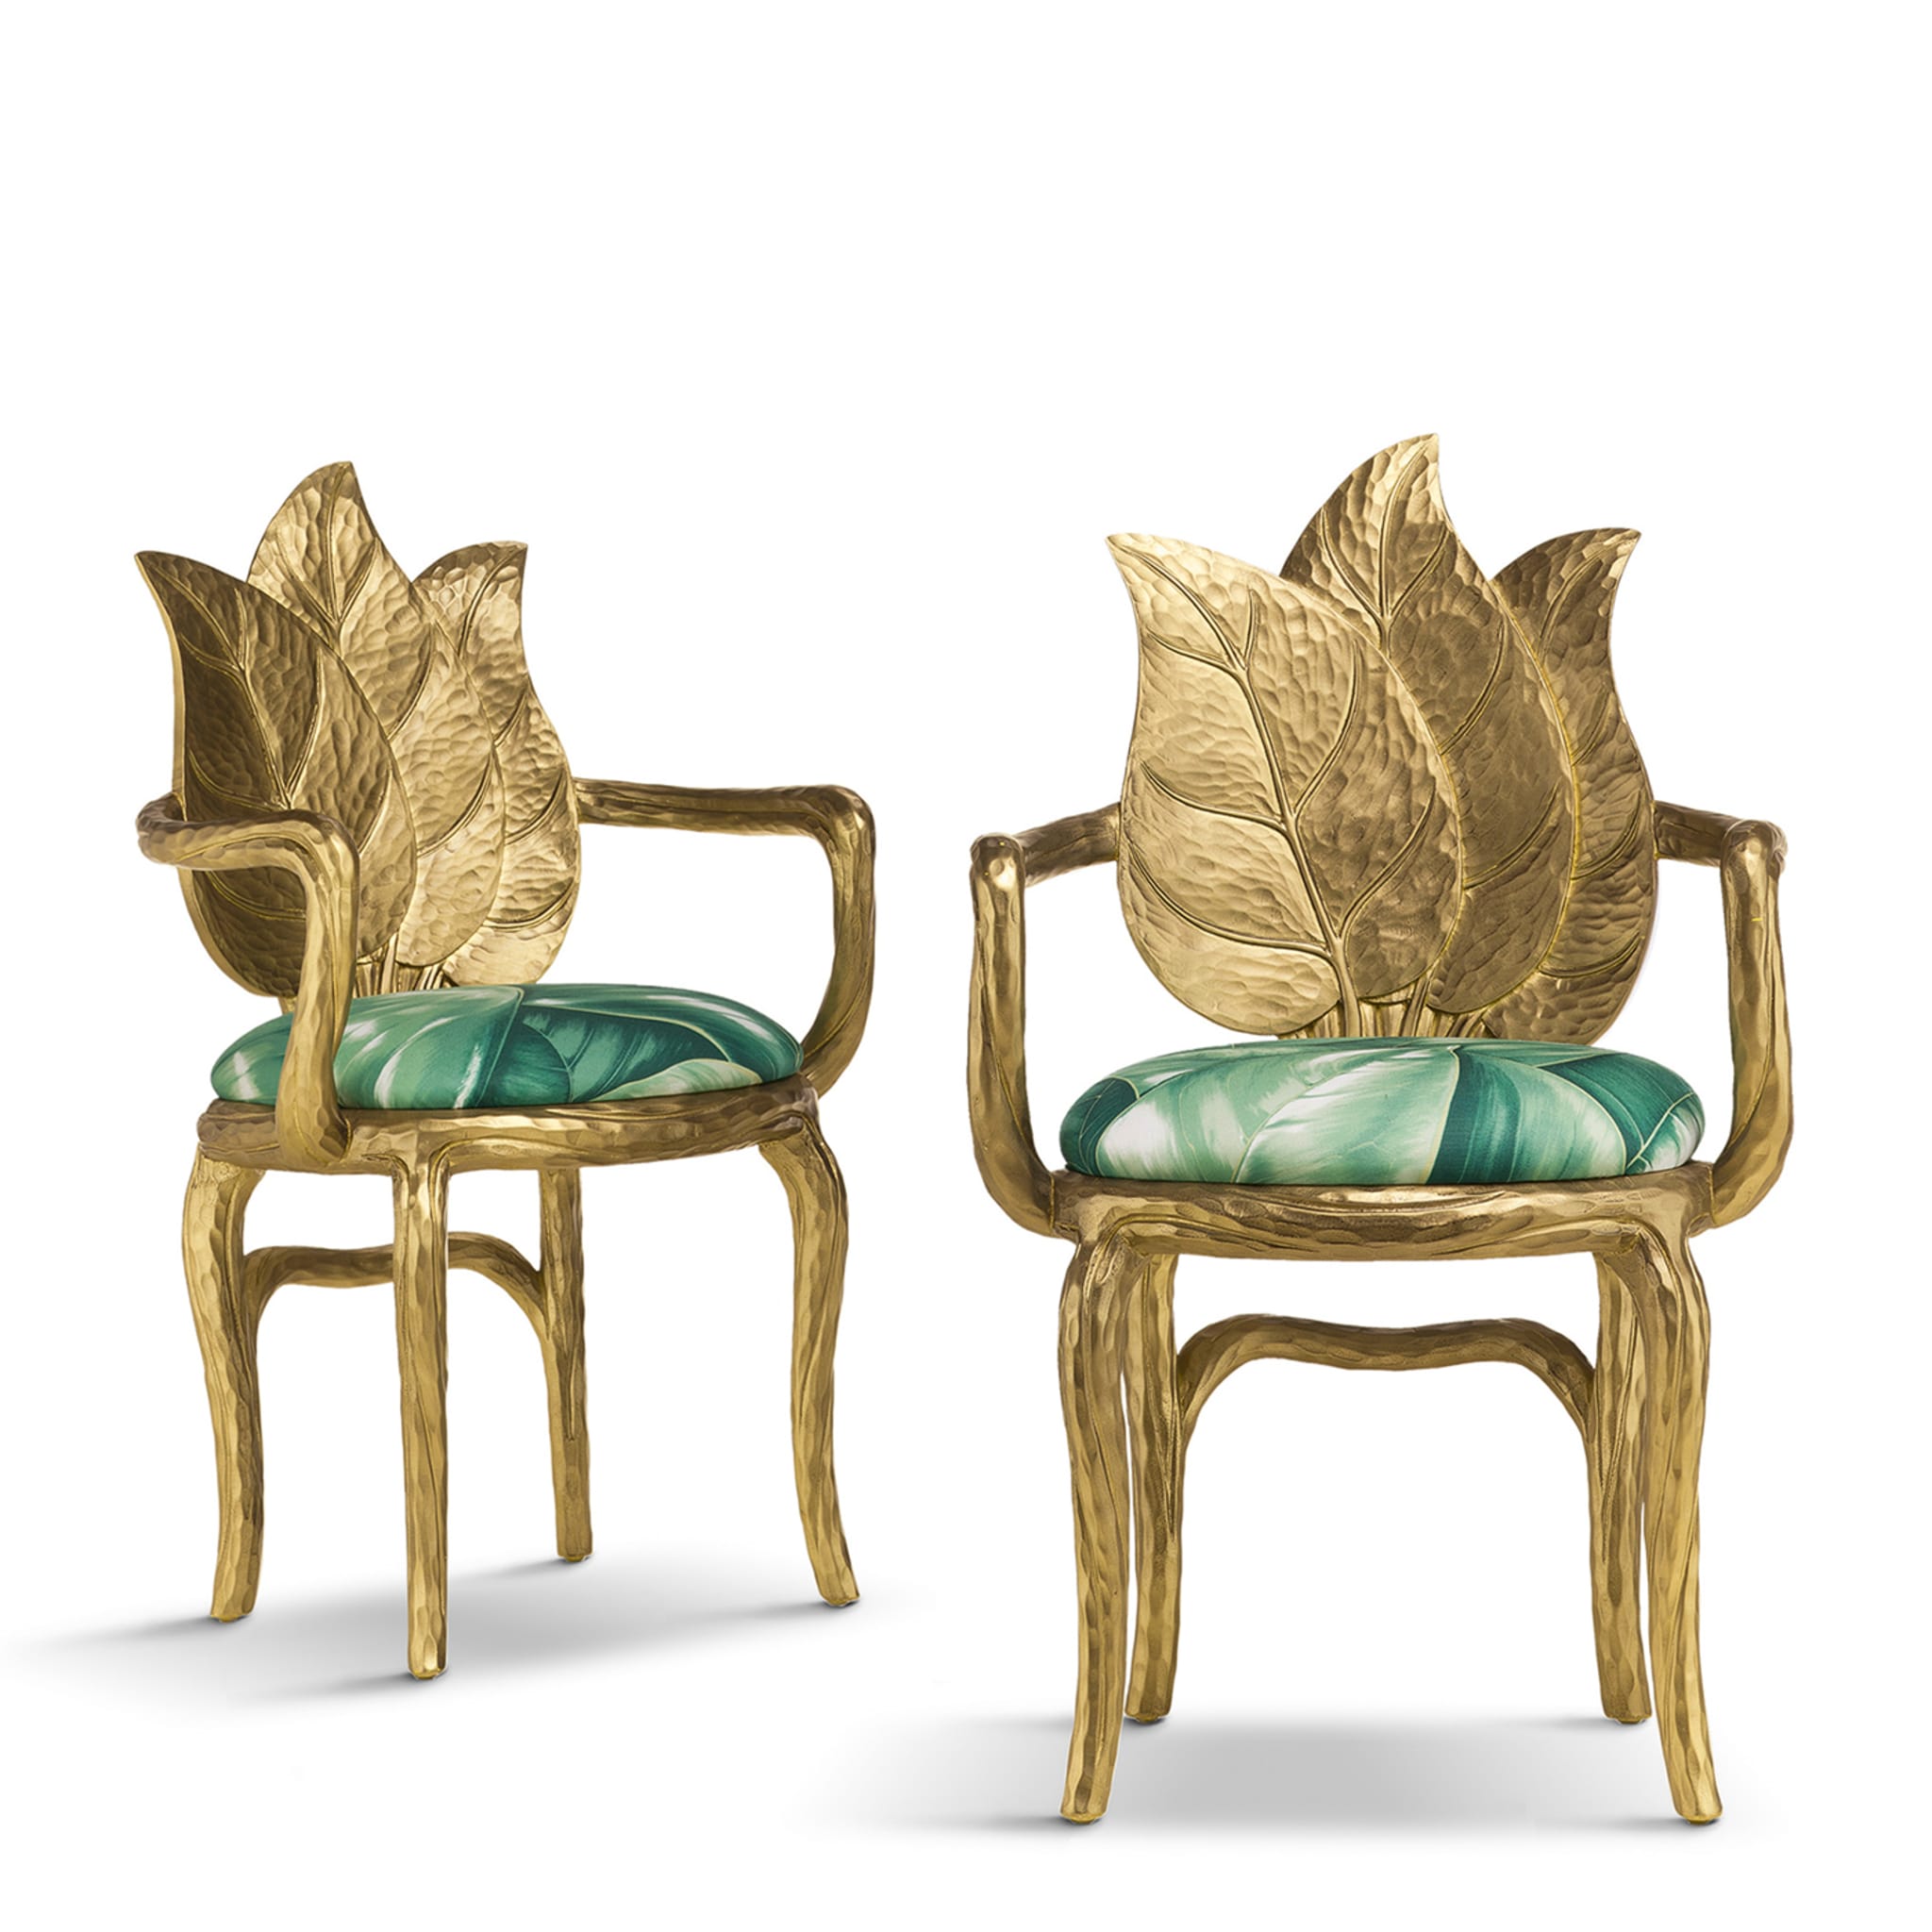 Clorophilla Gold Chair by Ferruccio Laviani - Alternative view 1